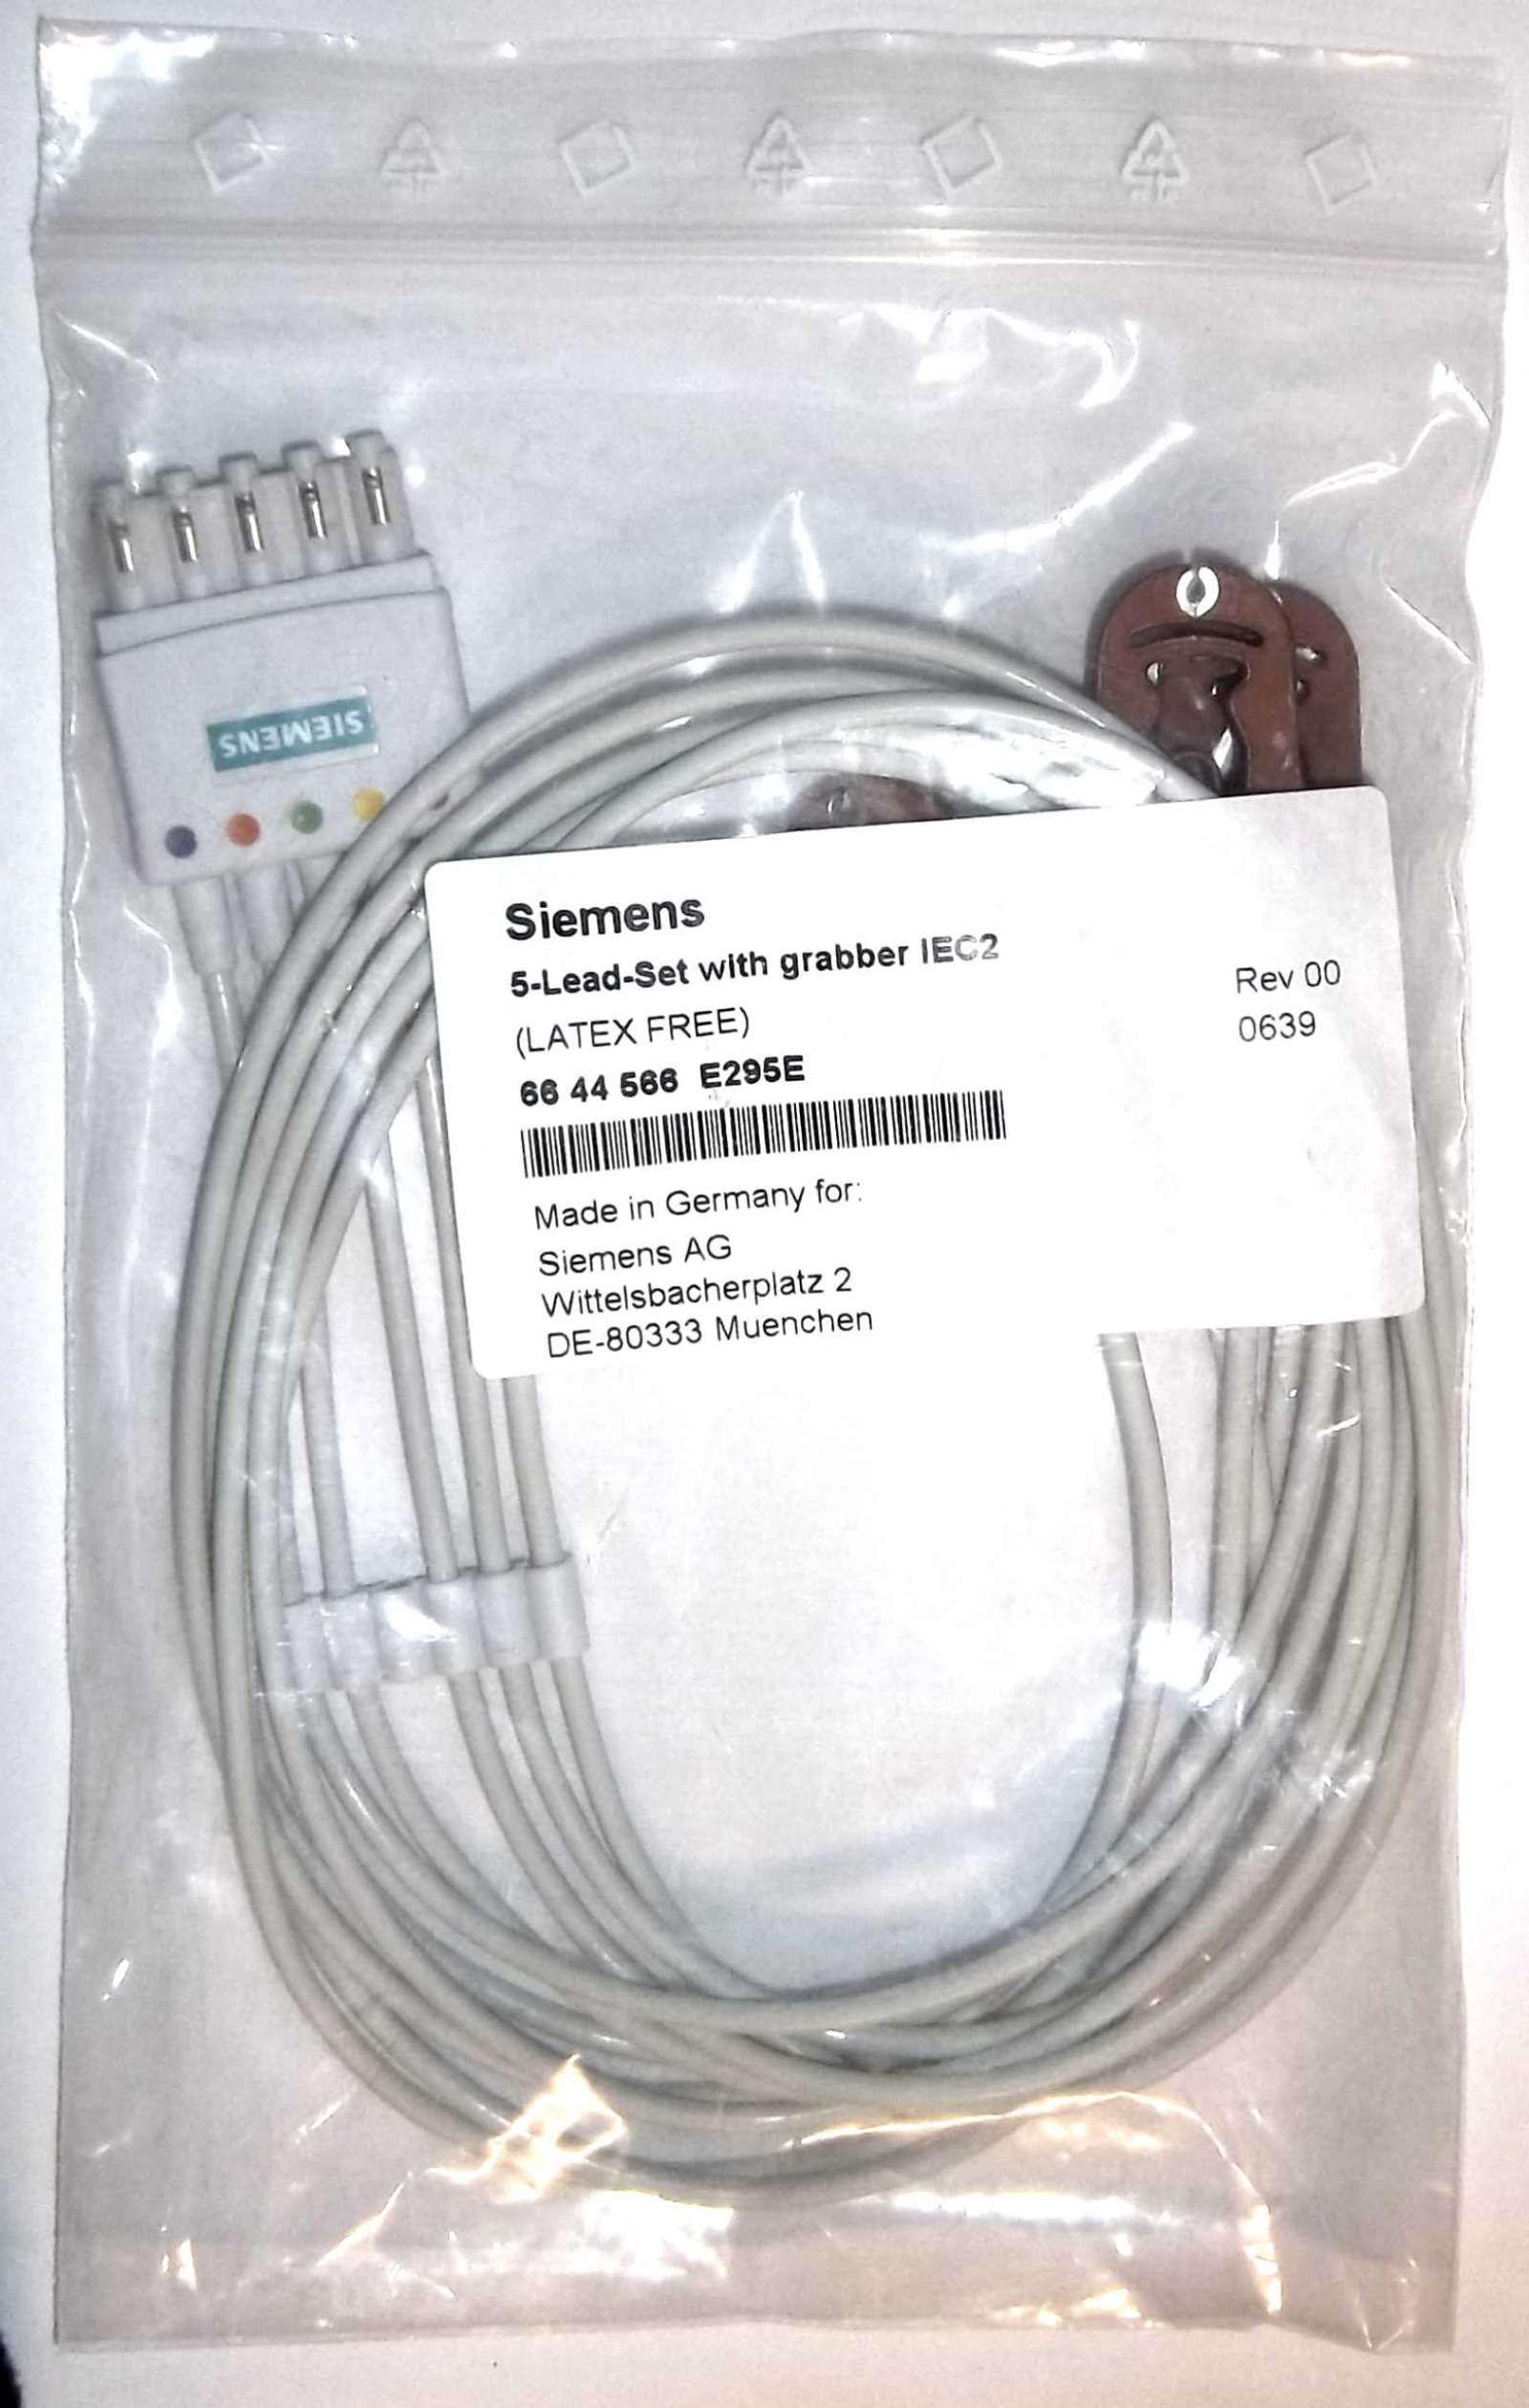 Standard Chest Lead Electrode Cable IEC2 Sensis Standard Chest Lead Electrode Cable Kit IEC2 Siemens sensis 66 44 566 E295E 5 Lead Set Grabbers IEC2 